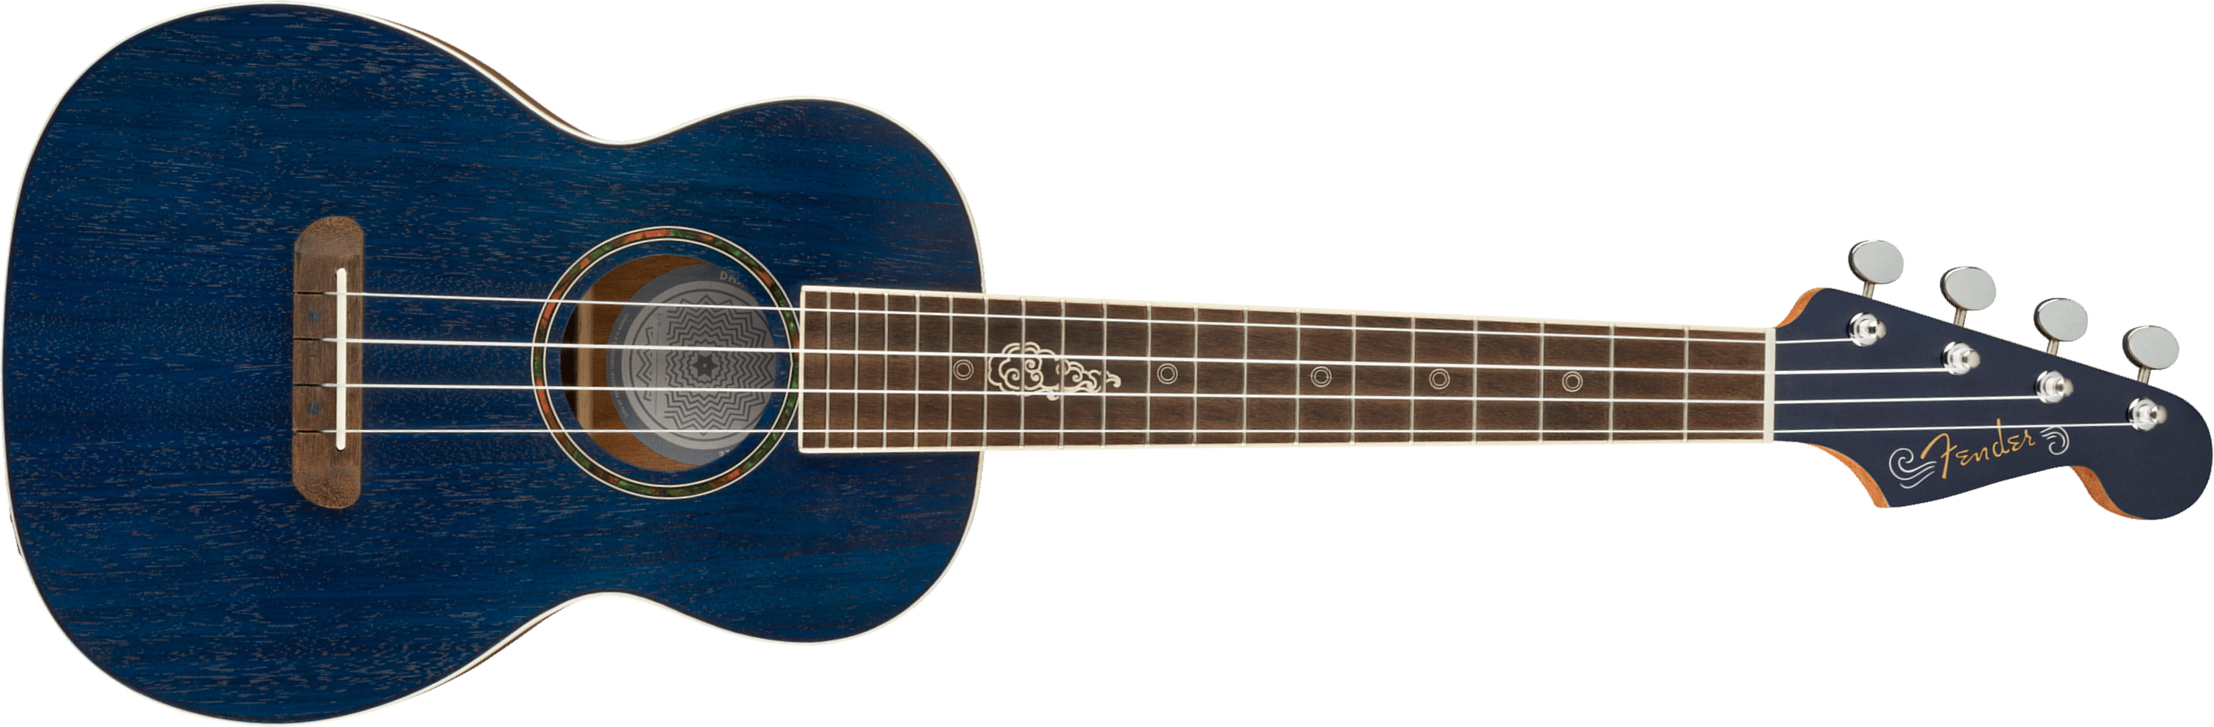 Fender Dhani Harrison Uke Signature Tenor Tout Ovangkol Noy +housse - Sapphire Blue - Ukulele - Main picture